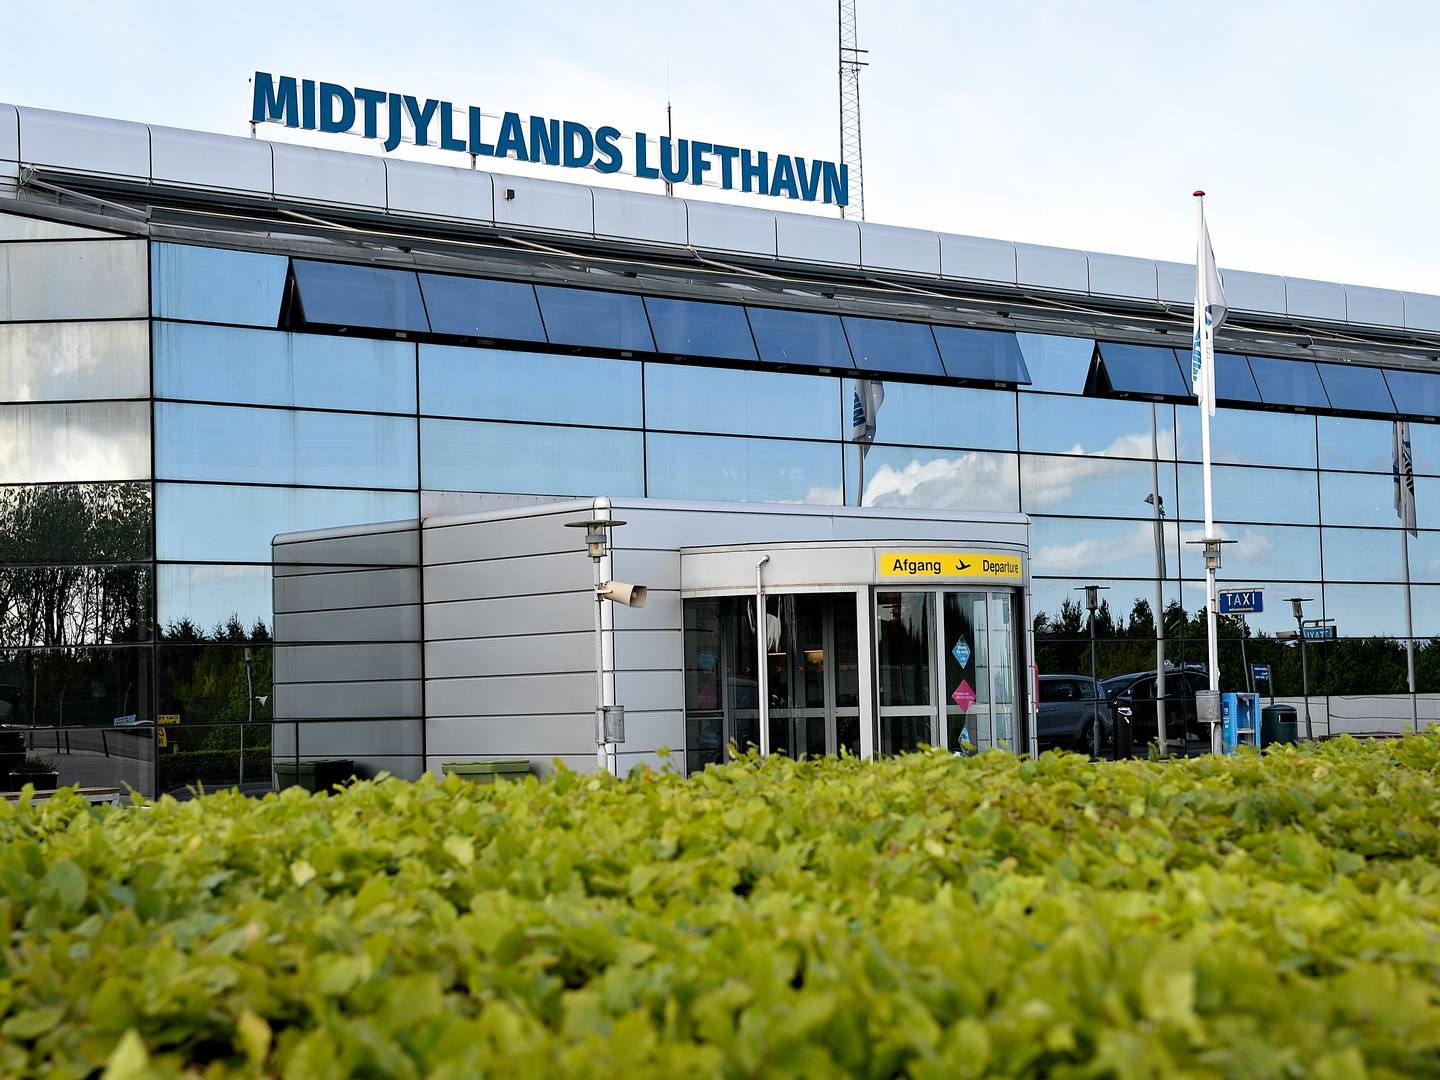 Terminalen i Midtjyllands Lufthavn kan meget snart blive solgt. | Foto: Ernst van Norde